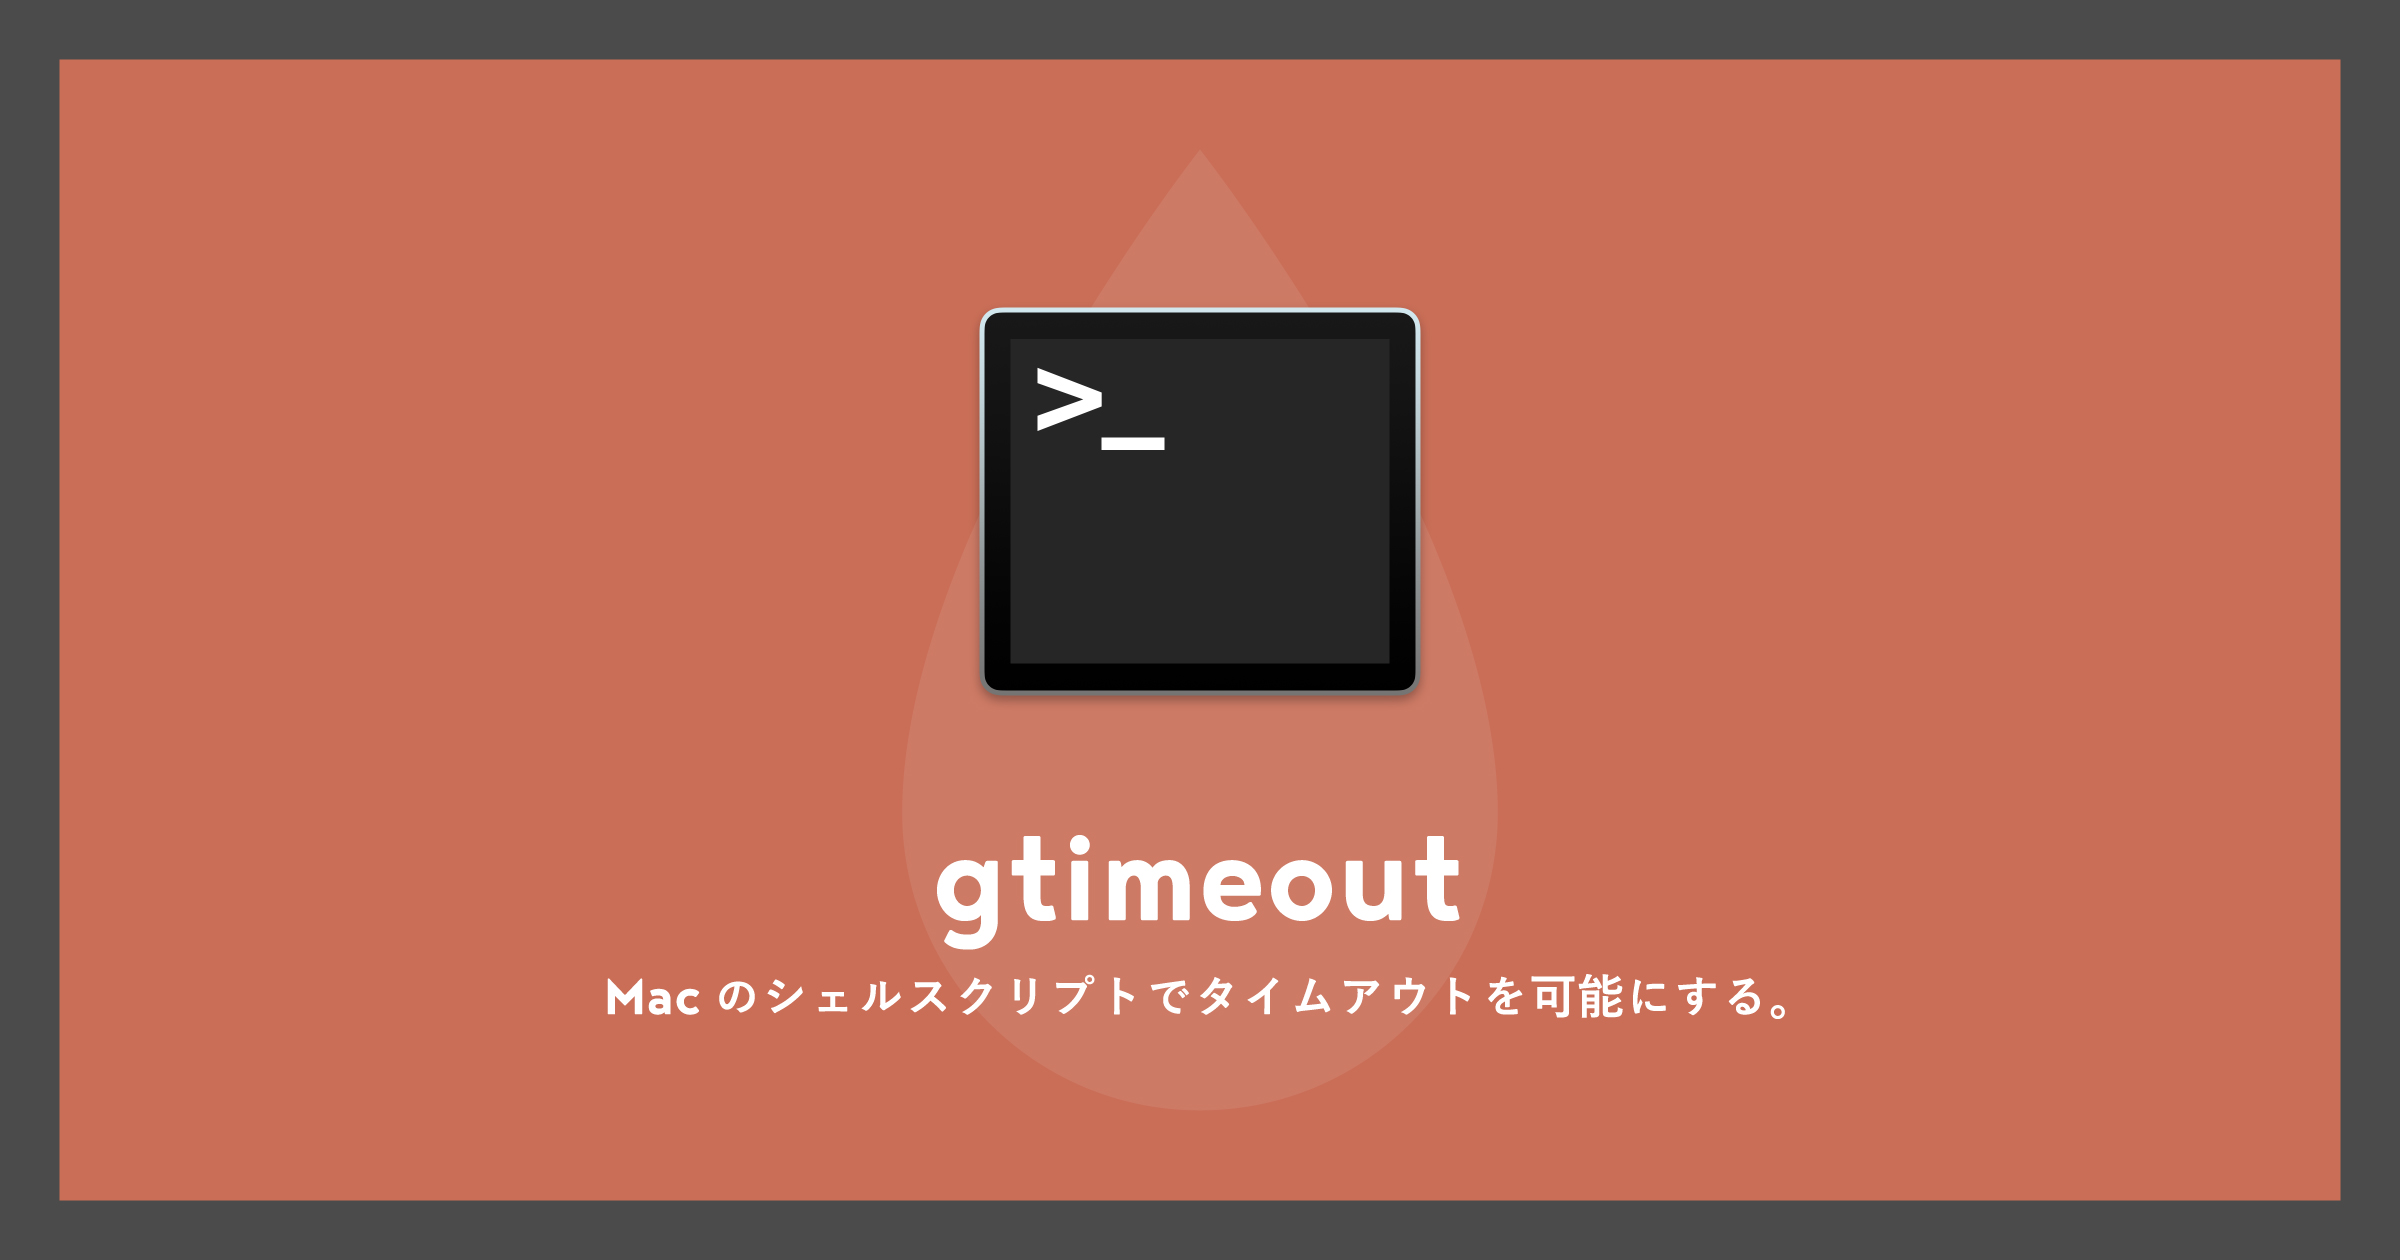 「[Mac]Automator等のシェルスクリプトでタイムアウトさせるgtimeout」のアイキャッチ画像